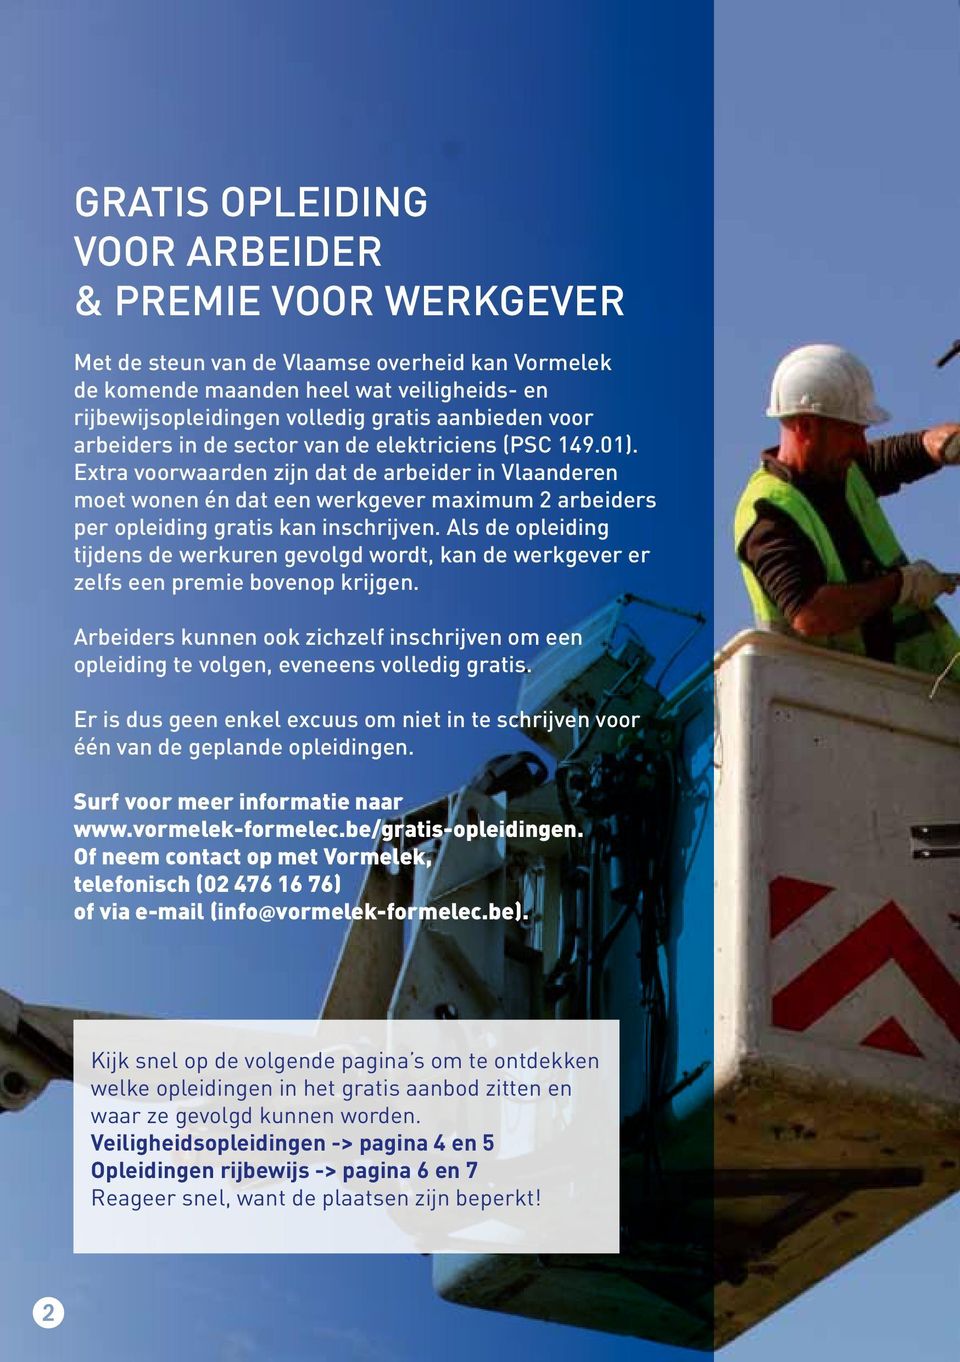 Extra voorwaarden zijn dat de arbeider in Vlaanderen moet wonen én dat een werkgever maximum 2 arbeiders per opleiding gratis kan inschrijven.